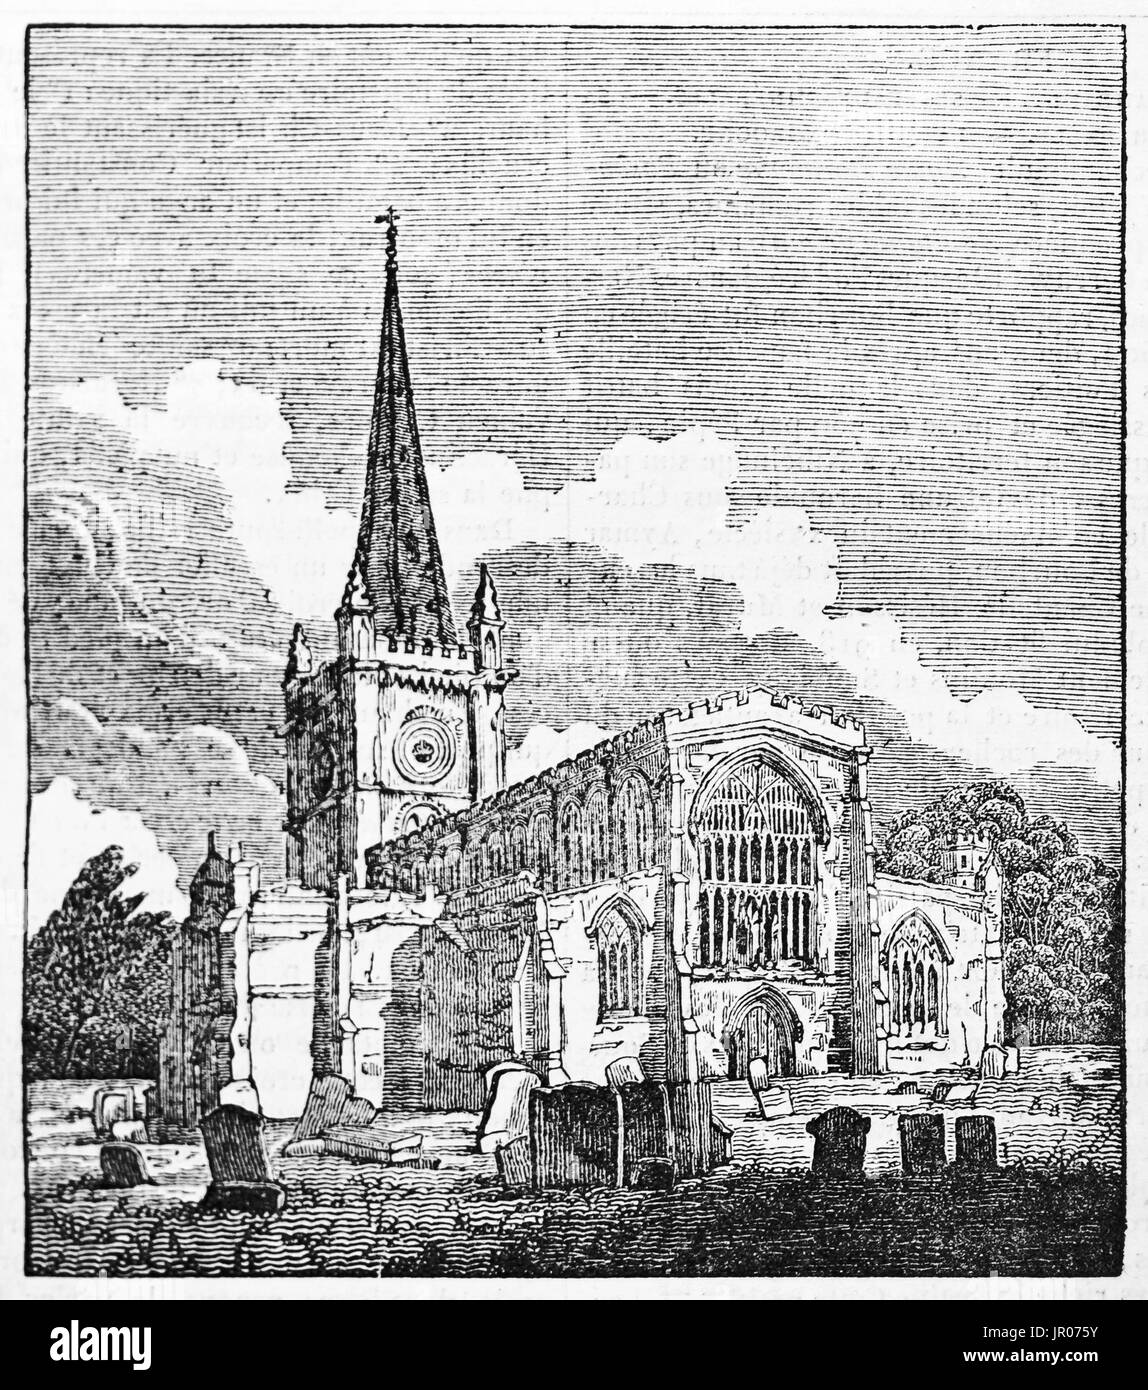 Vecchio vista della chiesa della Santa Trinità, Stratford-upon-Avon, Inghilterra. Da autore non identificato, pubblicato il Magasin pittoresco, Parigi, 1833. Foto Stock